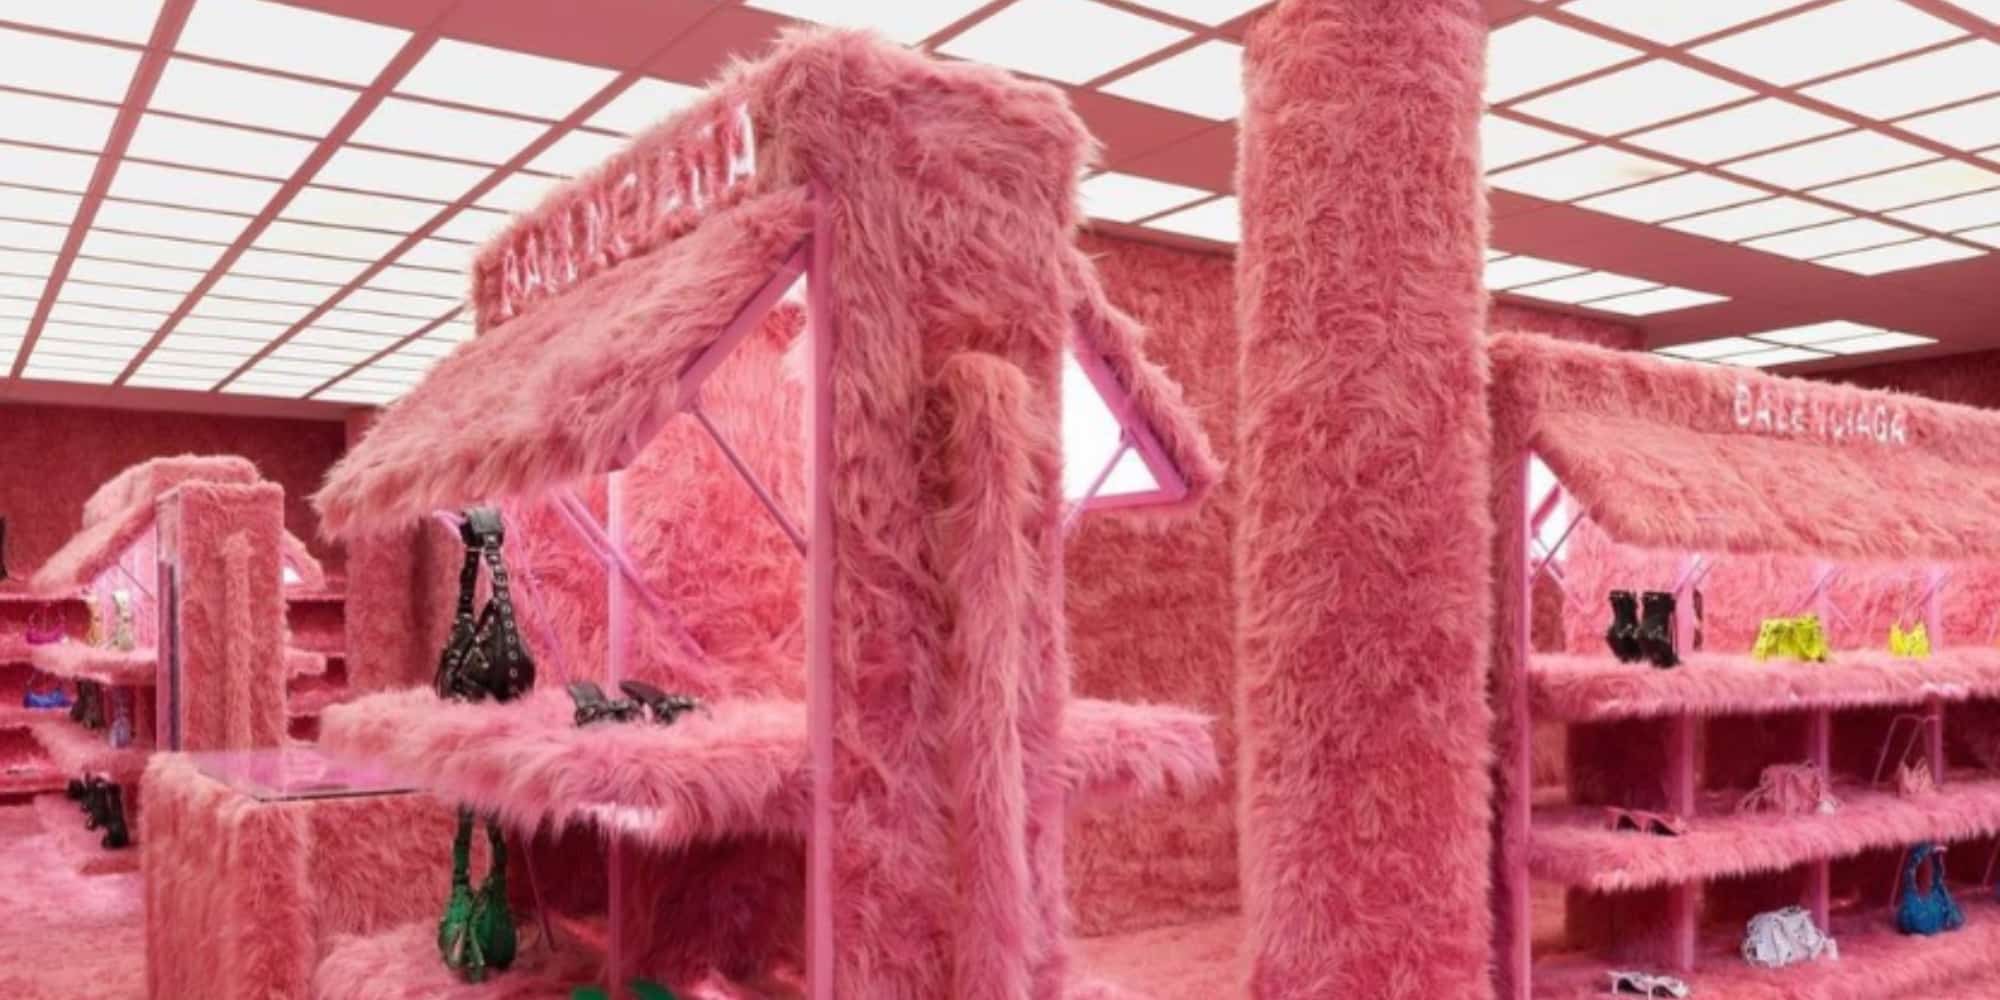 Το εσωτερικό του καταστήματος Balenciaga στο Λονδίνο, με την ροζ γούνα